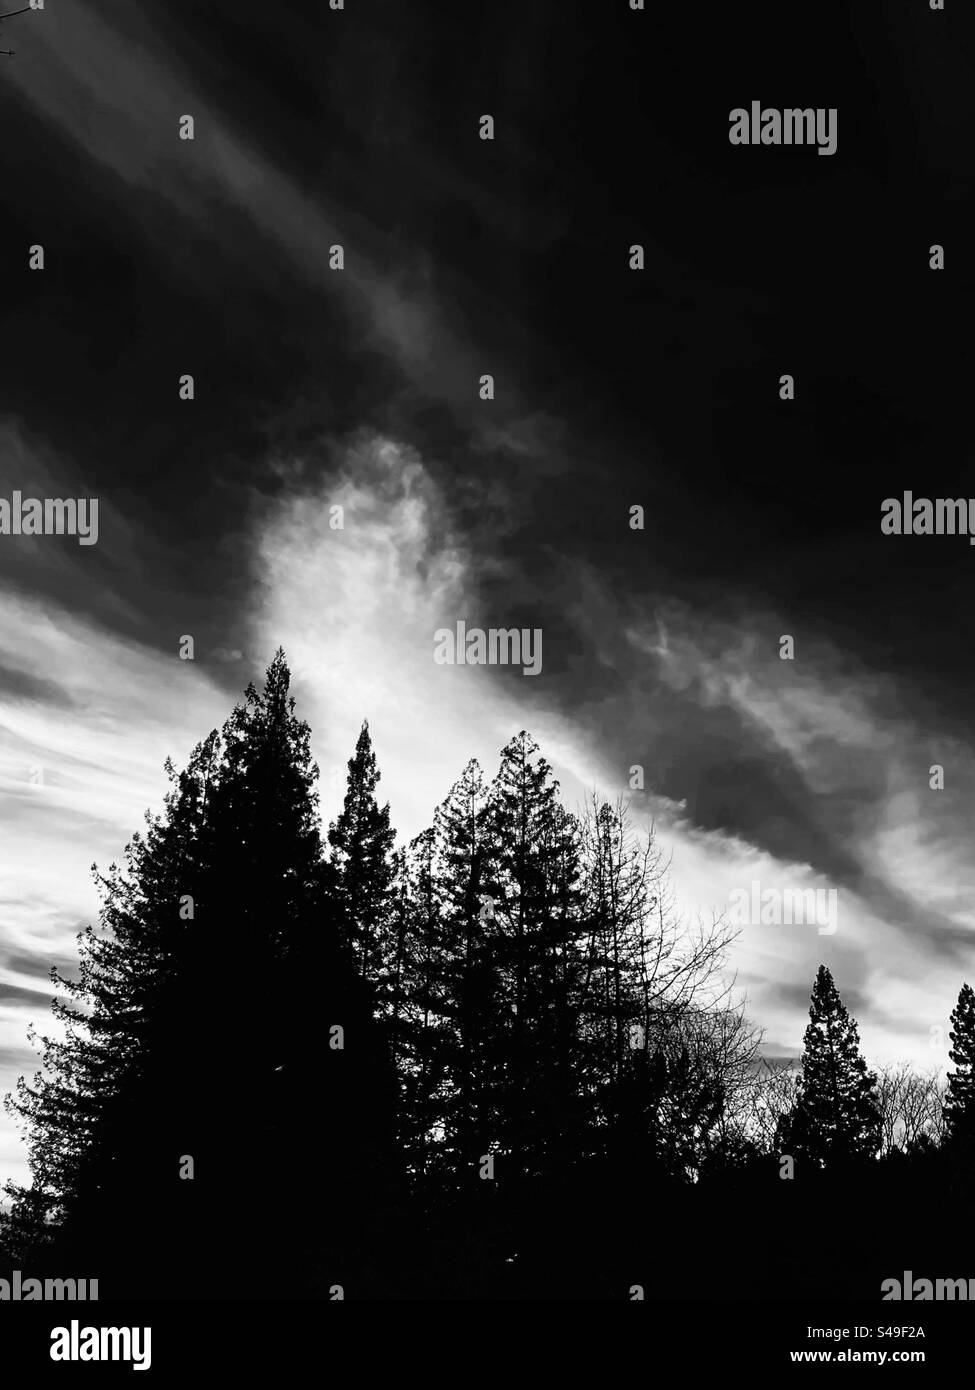 Wolken hinter Mammutbäumen, in Schwarz-weiß Stockfoto